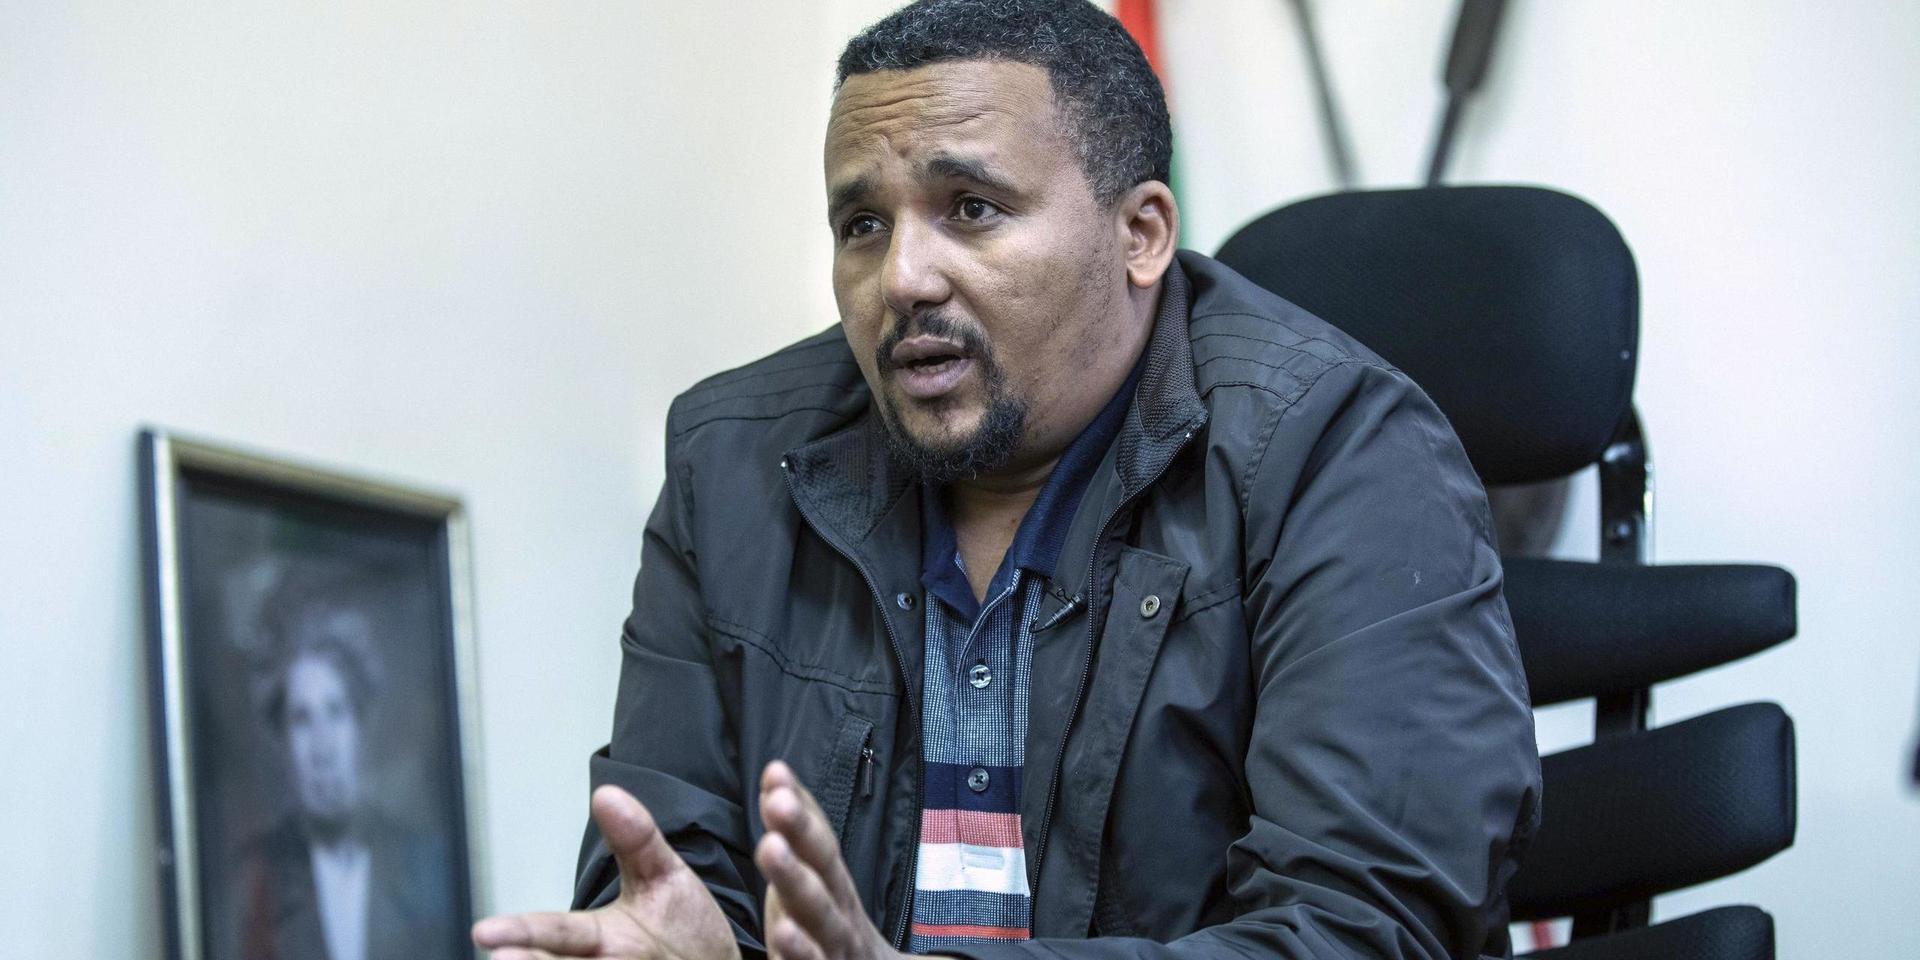 Den etiopiske oppositionspolitikern Jawar Mohammed. Arkivbild.